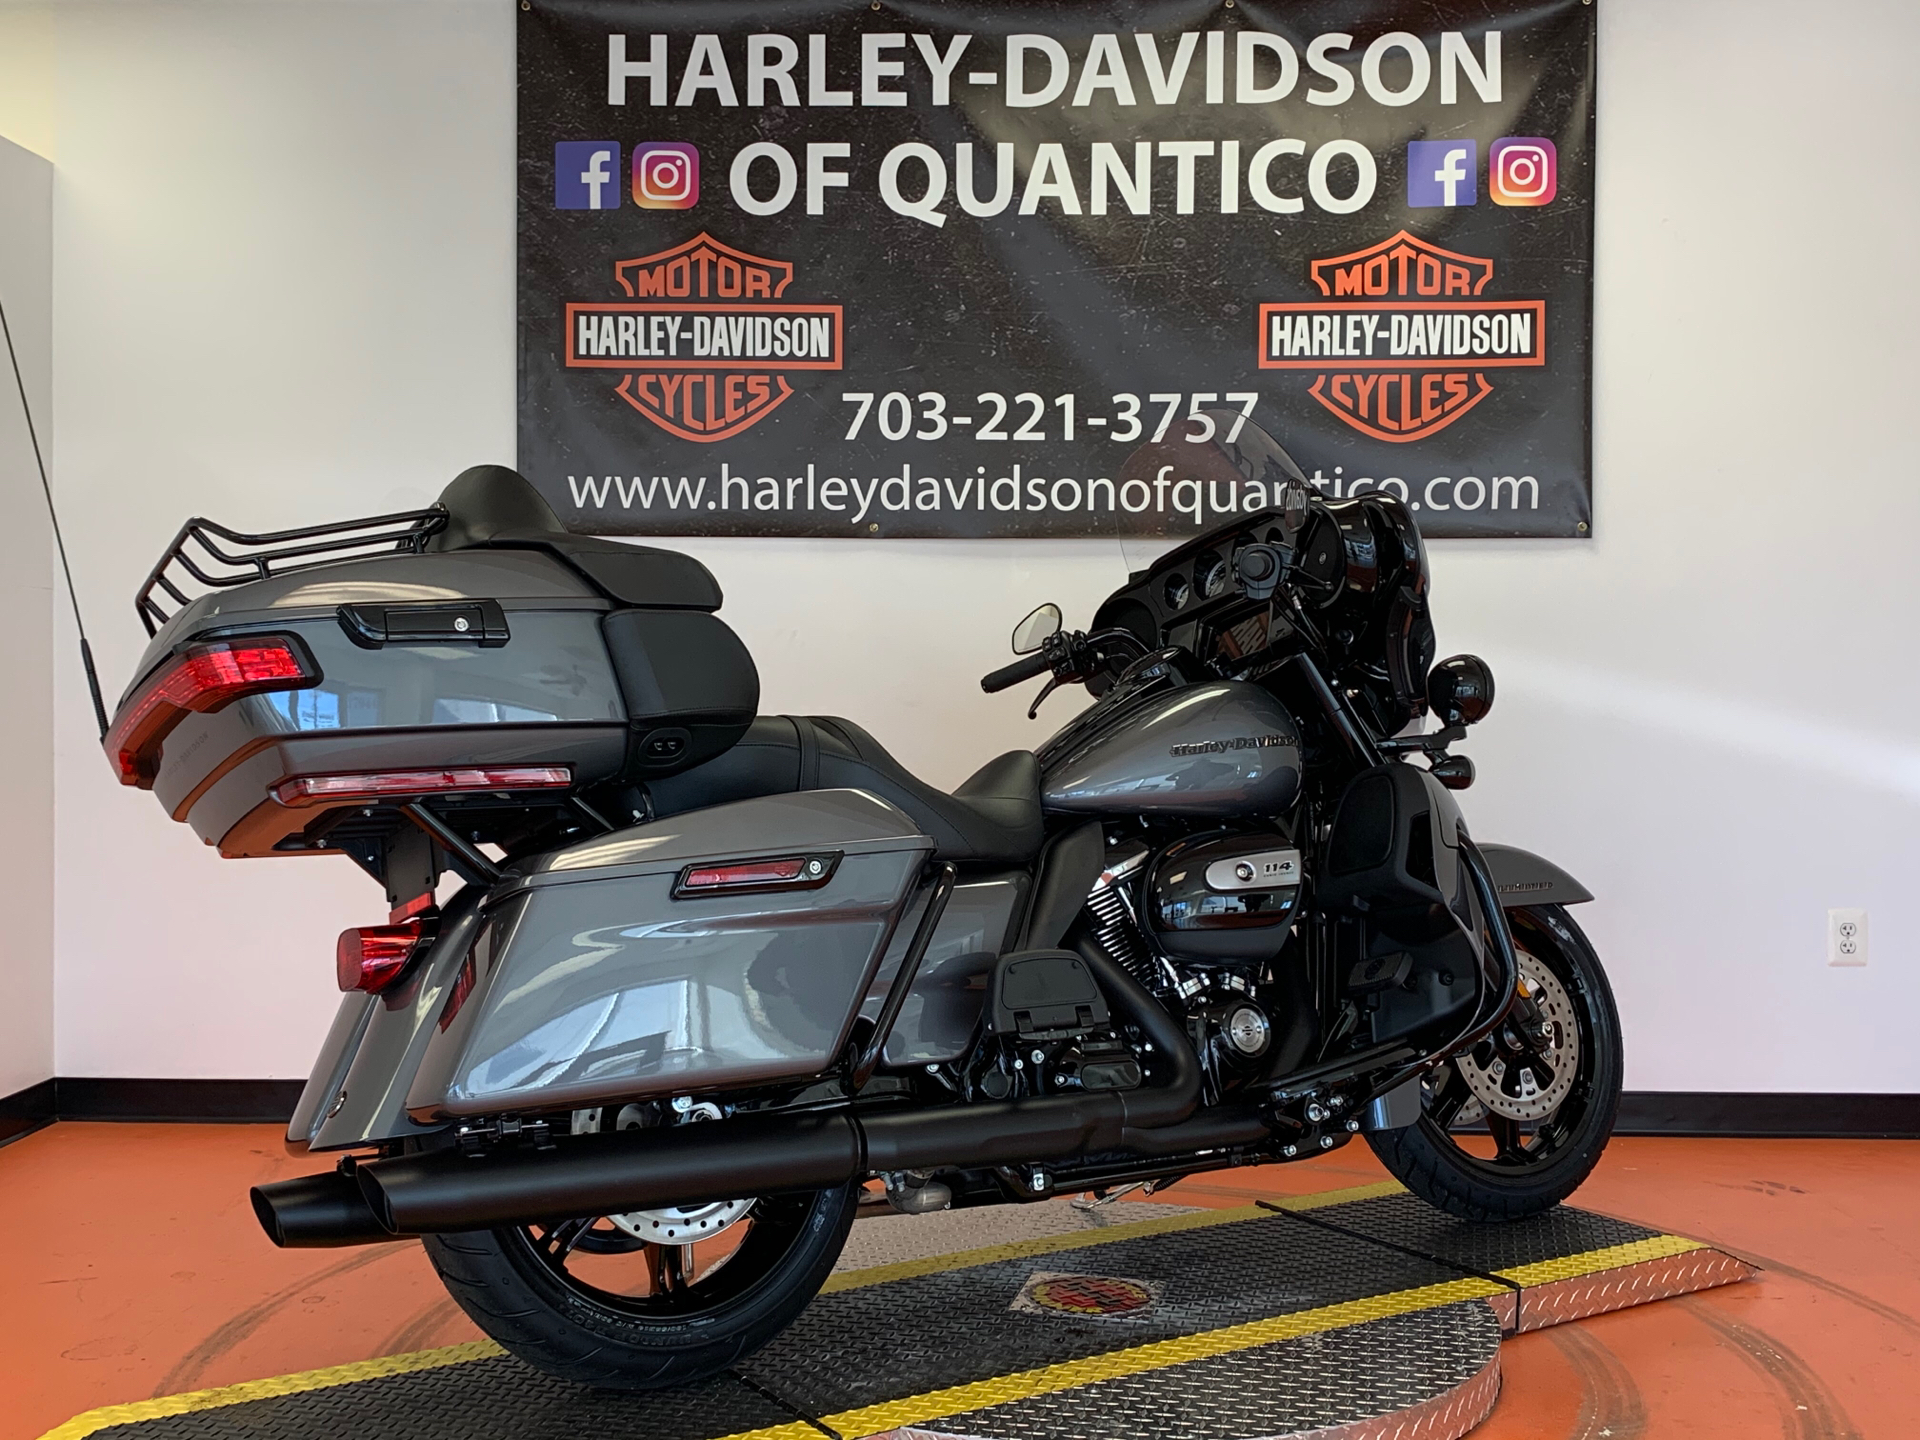 New 2021 Harley Davidson Limited Gauntlet Gray Metallic Motor Bikes In Dumfries Va 604425